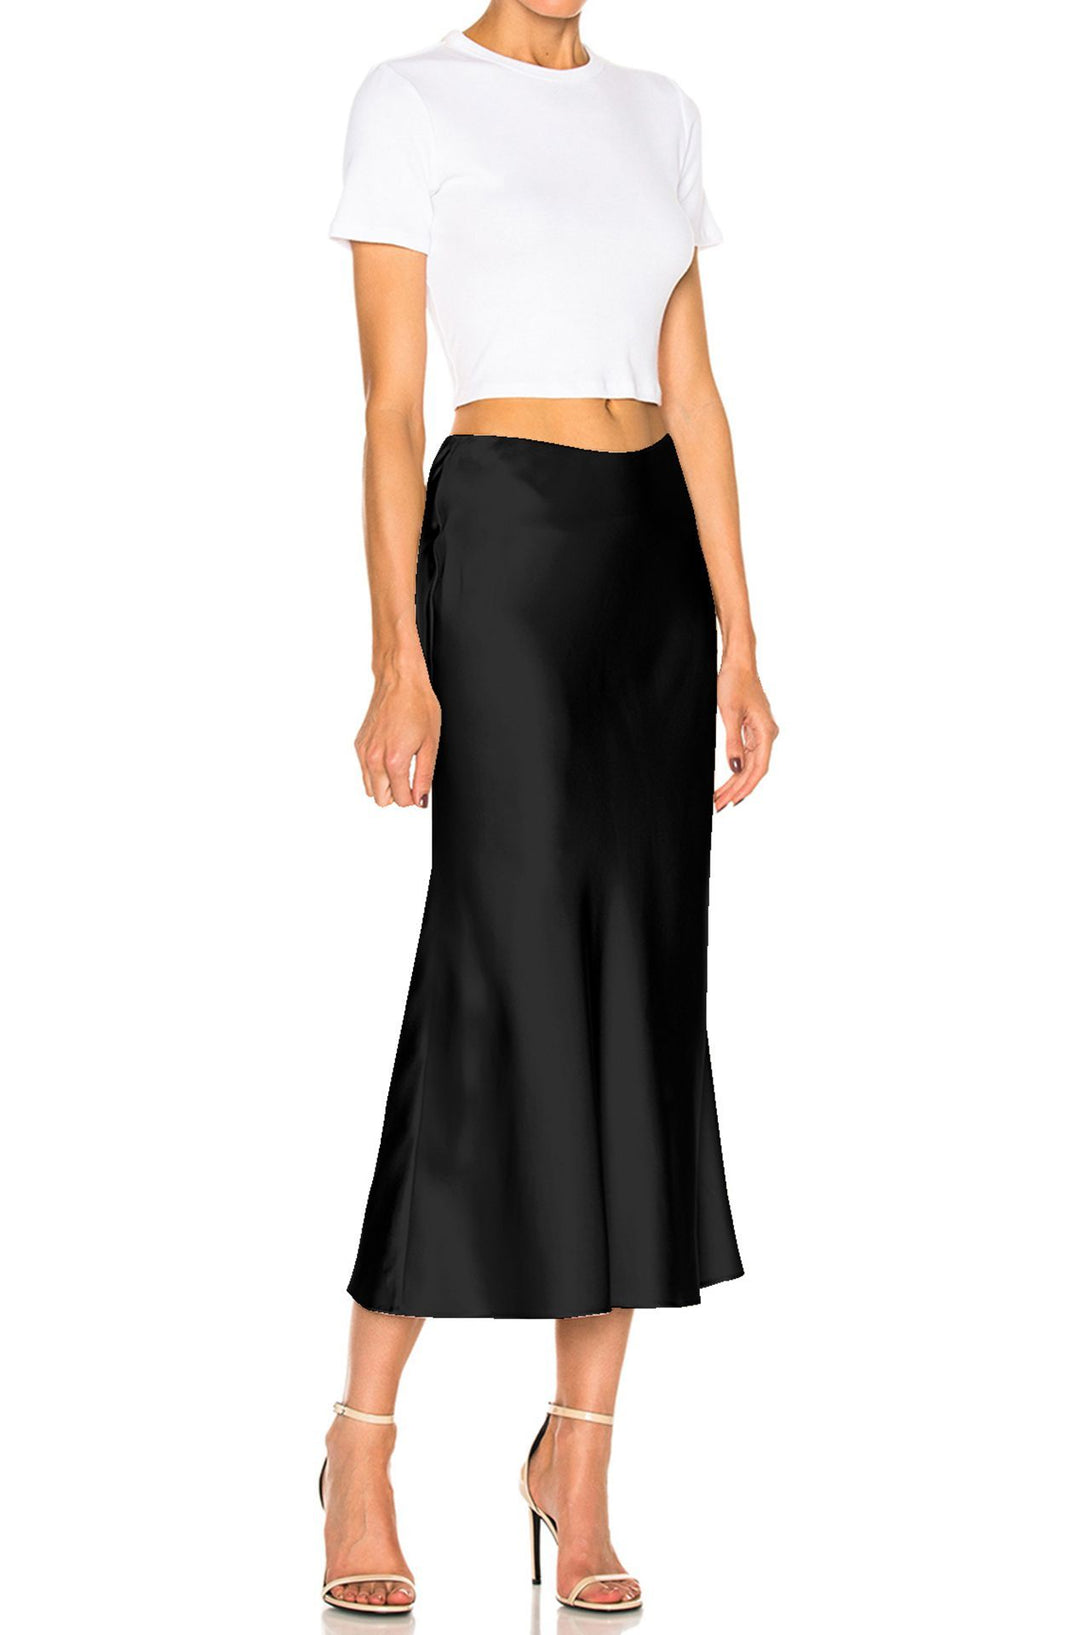 Designer-Silk-Skirt-In-Black-For-Womens-By-Kyle